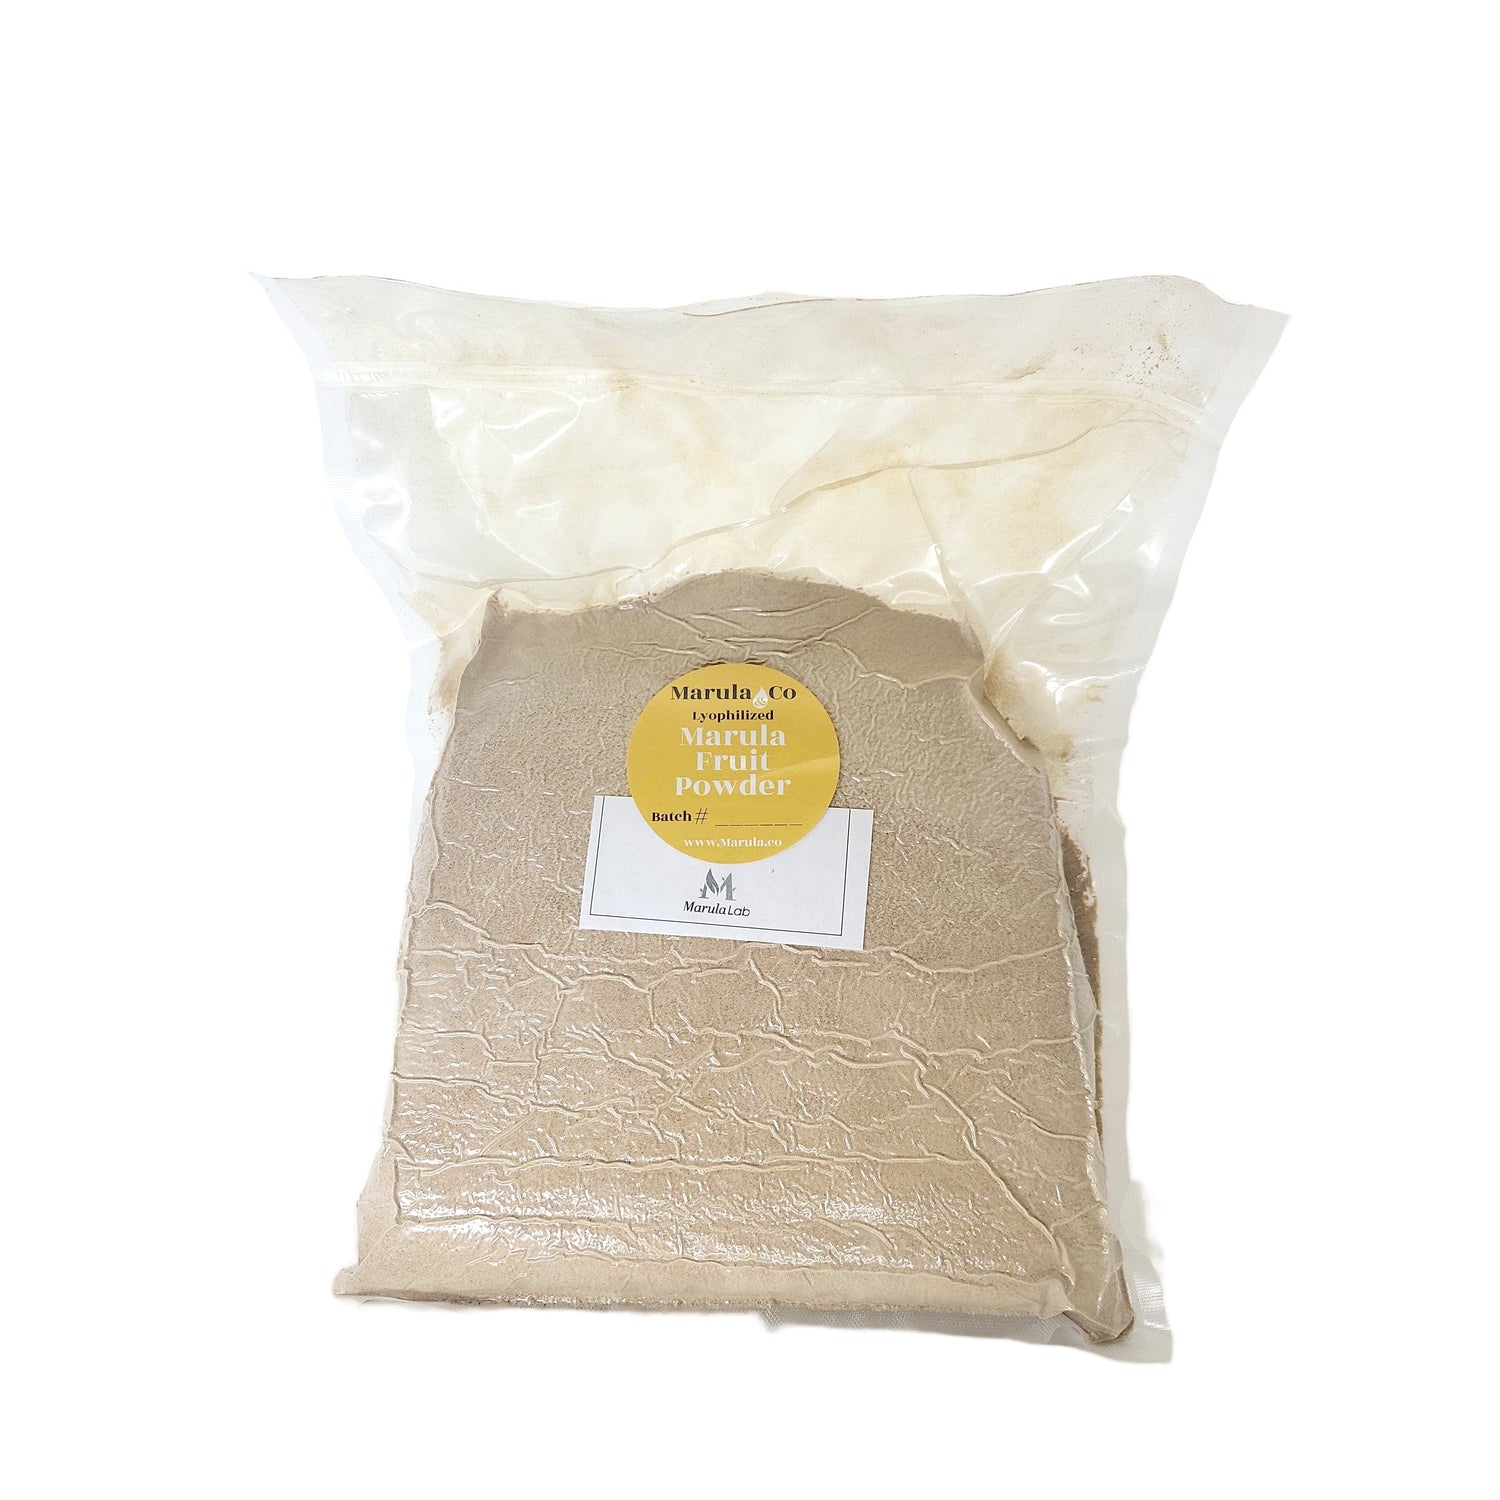 Bulk vacuum sealed - Nutritional Freeze-dried Marula fruit powder